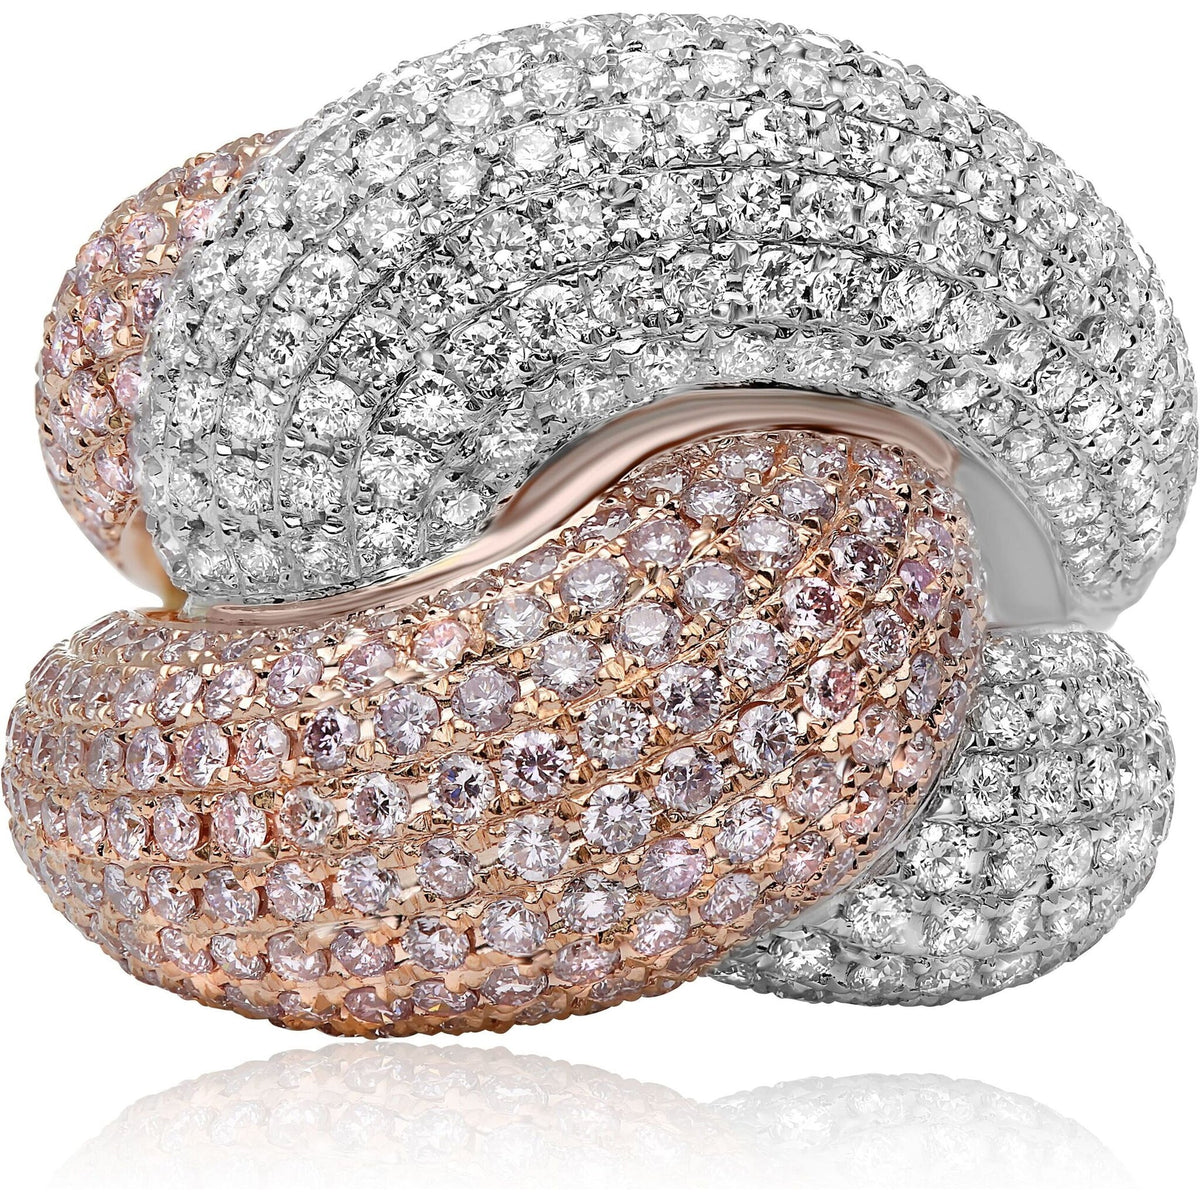 Roman Jules 18k White & Rose Gold Pink & White Diamond Pave Fashion Ring